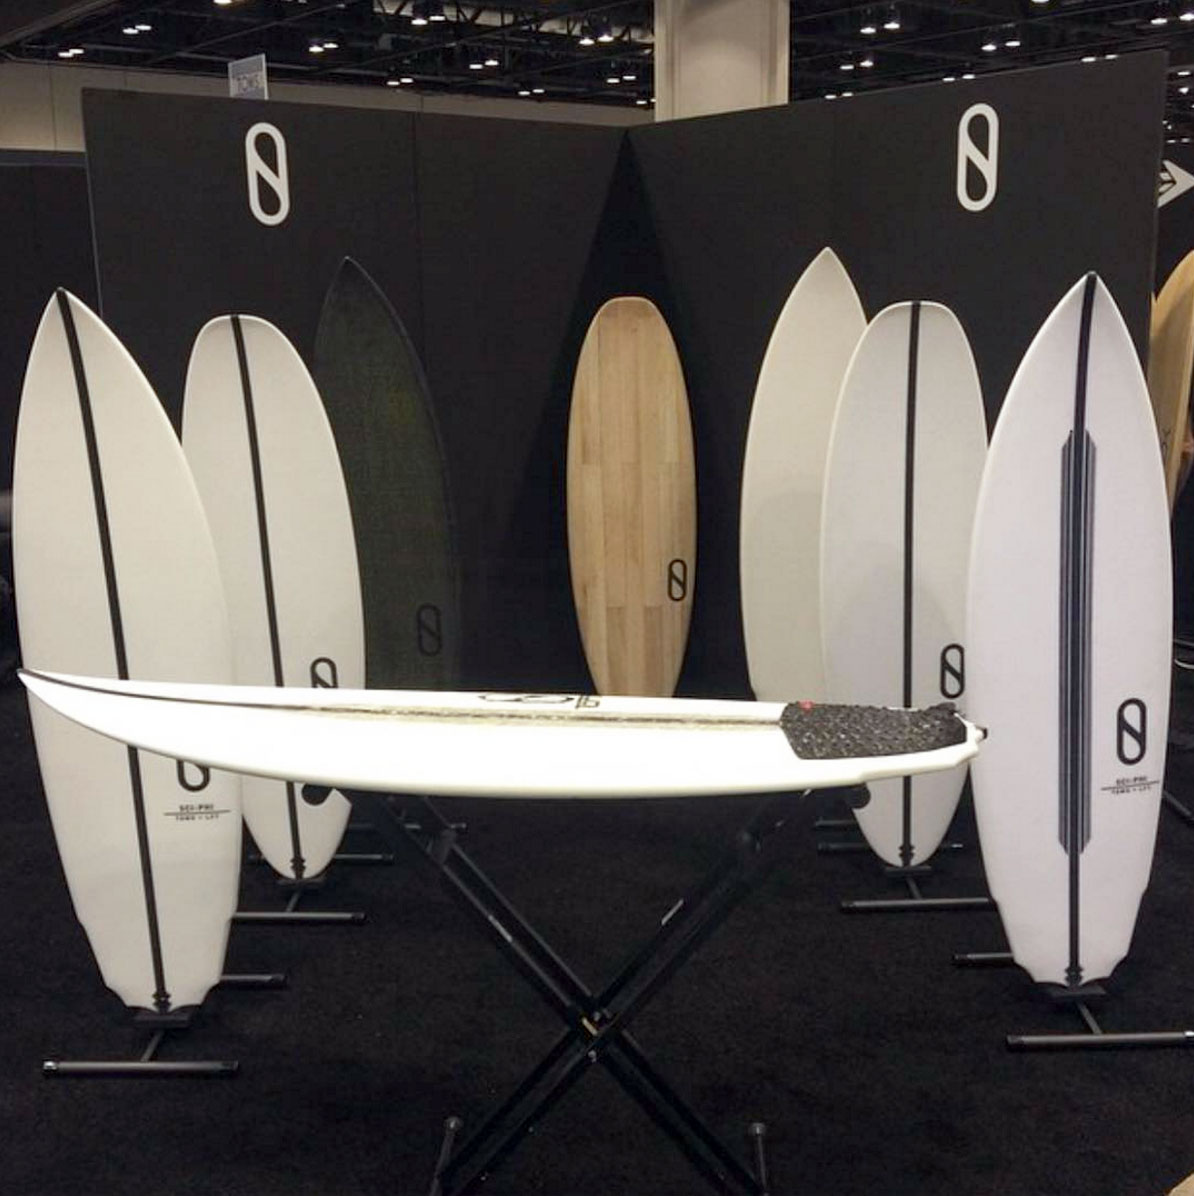 ケリー・スレーターのボードブランド「スレーターデザインズ」が3モデルをお披露目 | サーフィン動画ニュース World Surf Movies